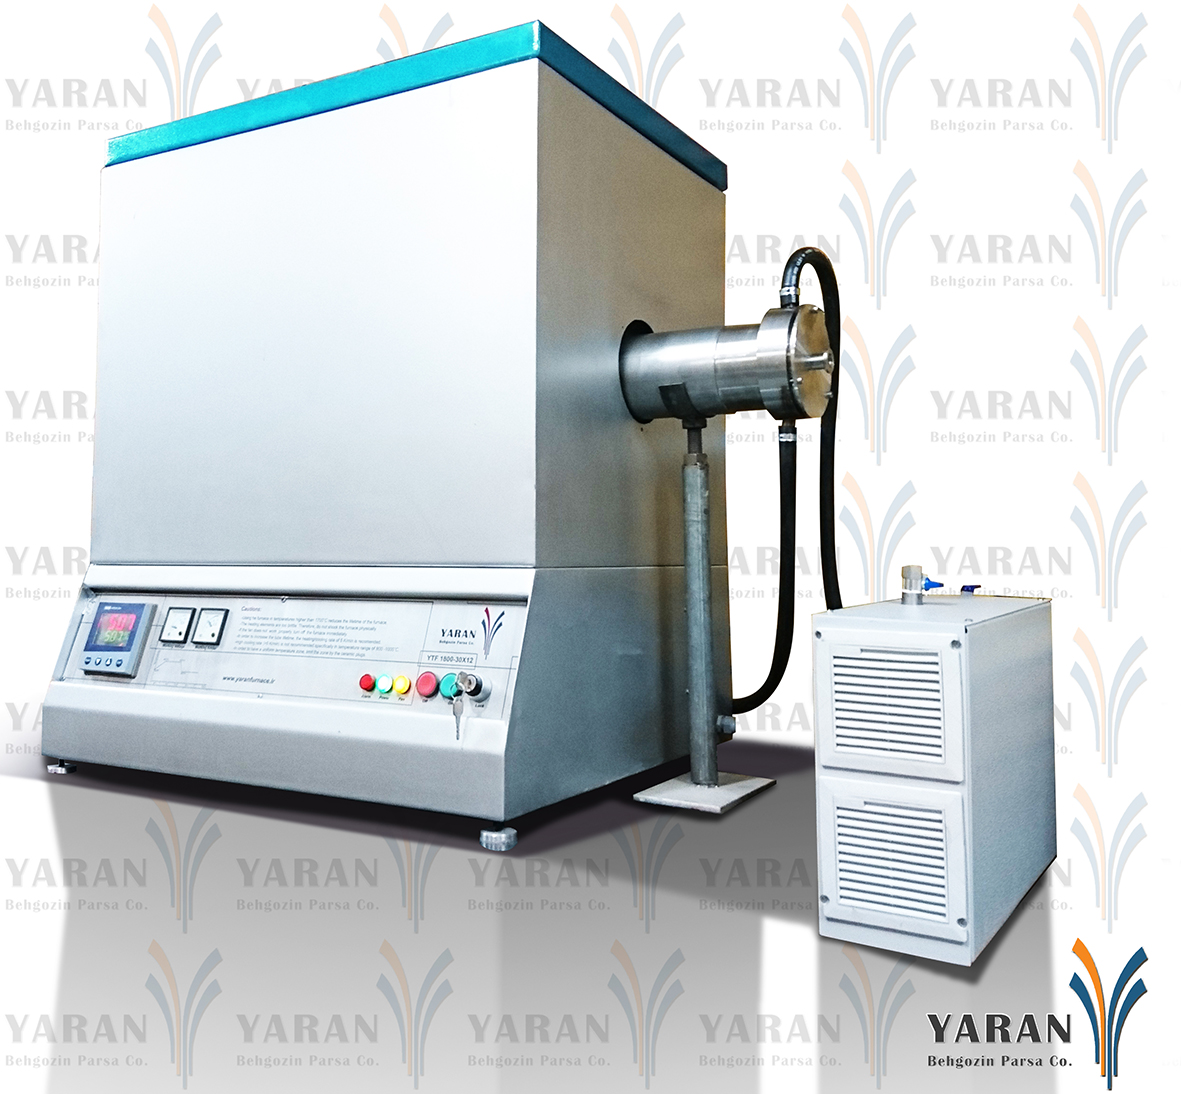 سیستم CVD با میکسر گاز 1700 درجه (با قطر تیوب 12 سانتی متر)